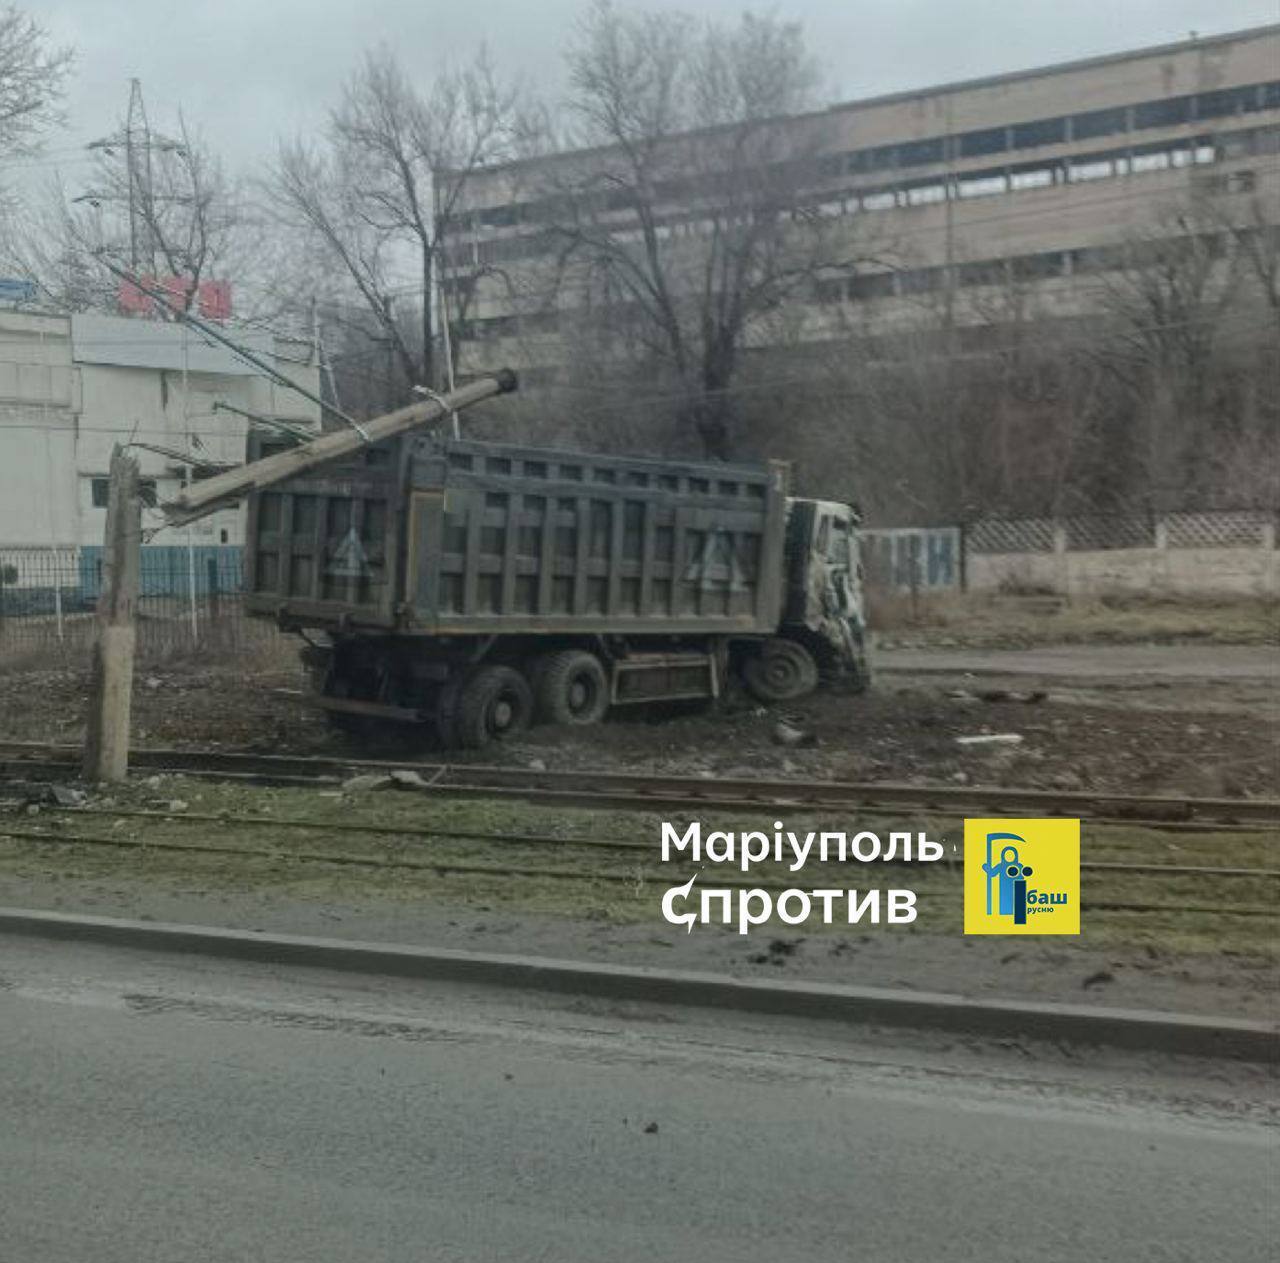 "Бавовна" удалась: в Мариуполе партизаны обезвредили военный грузовик оккупантов. Фото и видео